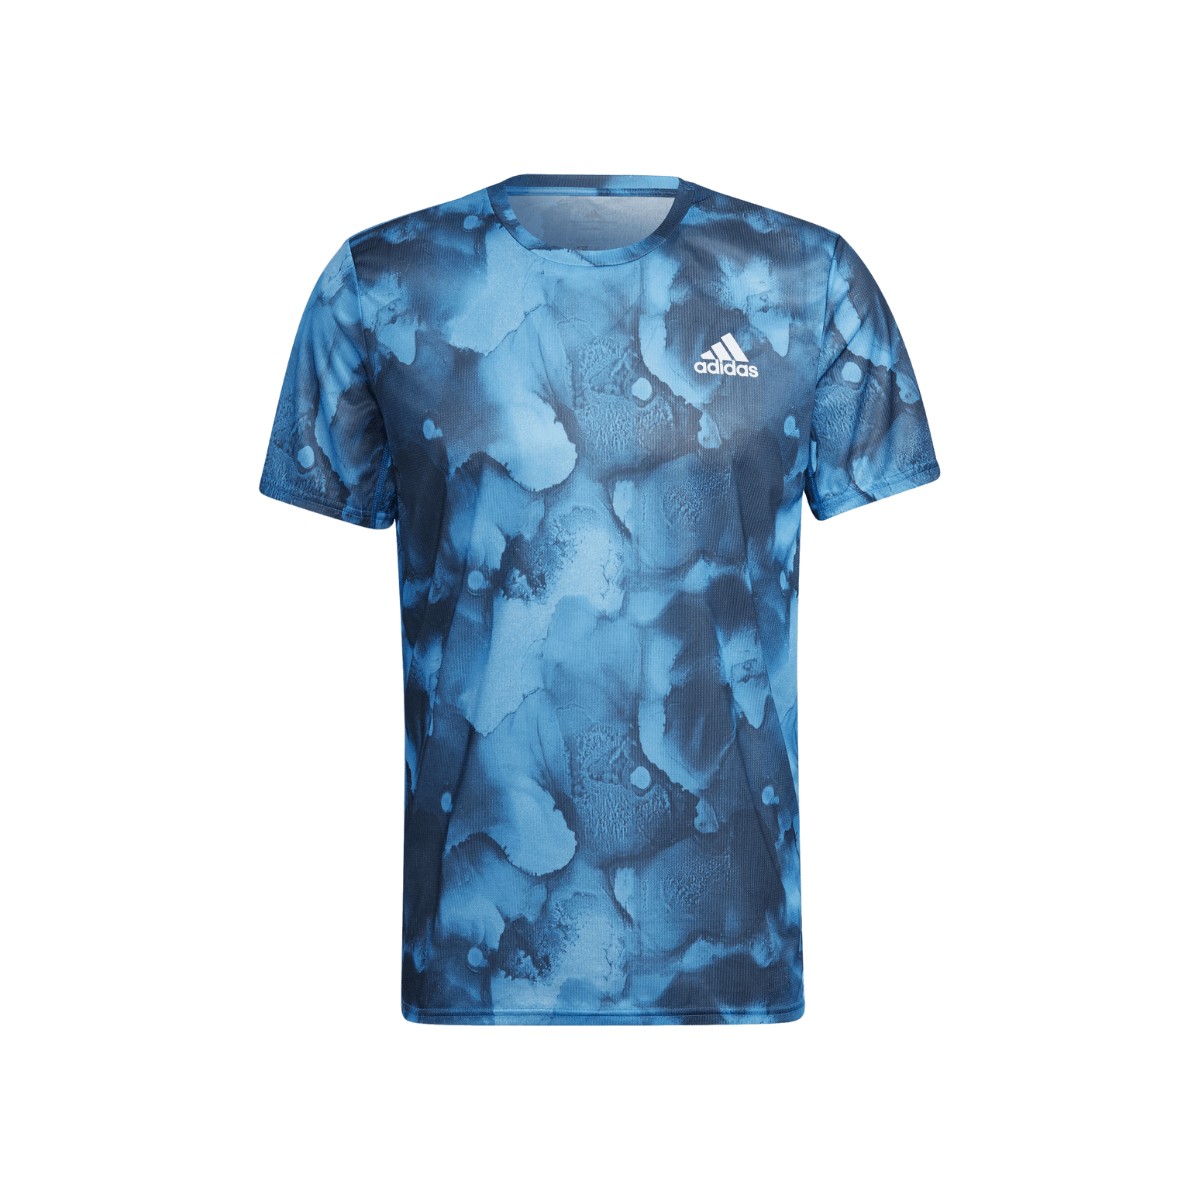 Camiseta Adidas Fast Graphic Azul Estampado, Talla S